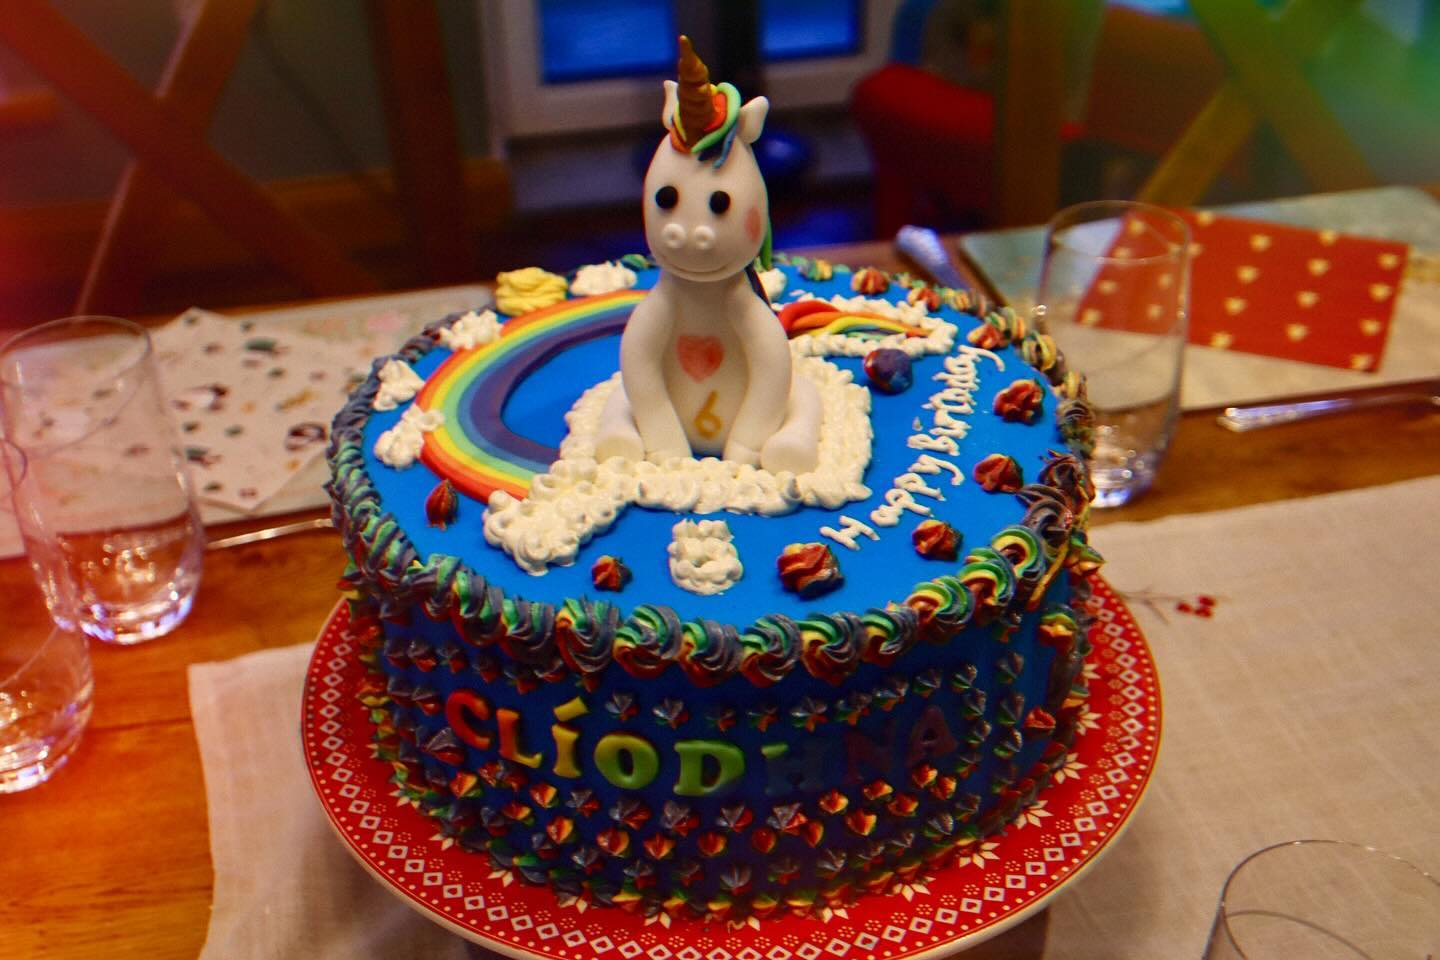 Godchild’s birthday cake - like every six year old, she likes unicorns! Cake even had 🦄 .